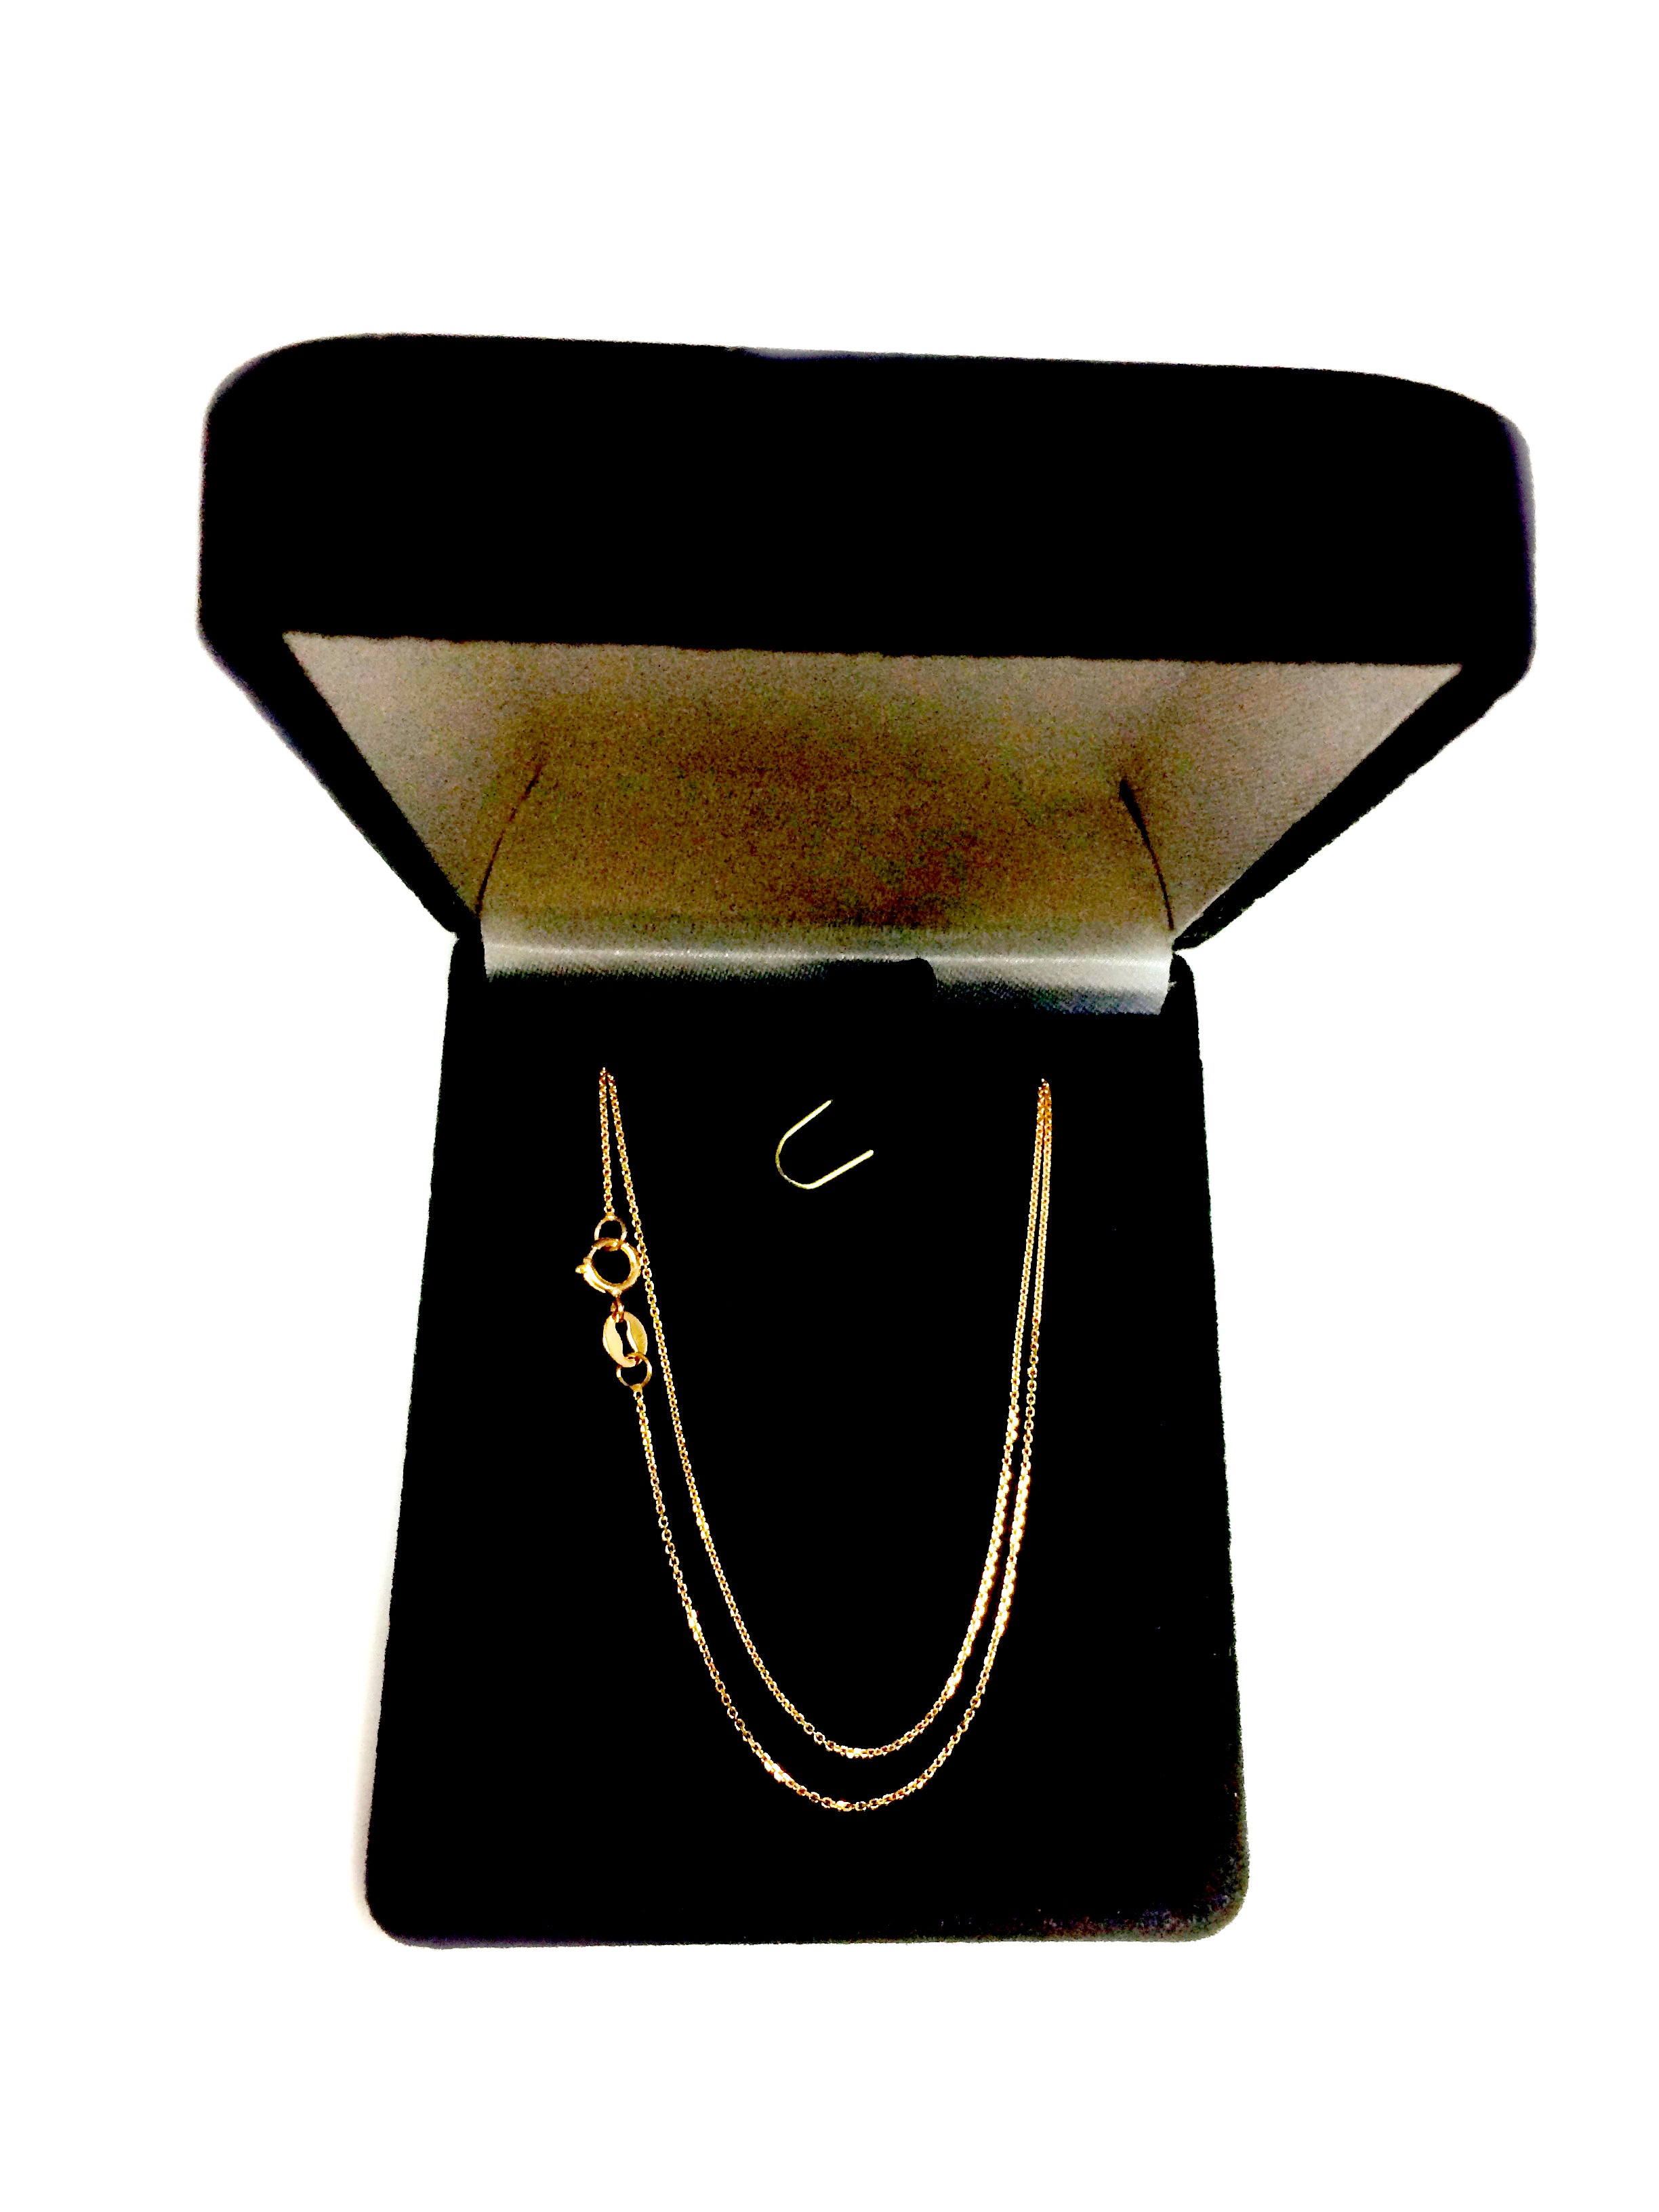 Collar de cadena con eslabones tipo cable de oro rosa de 14 k, joyería fina de diseño de 0,5 mm para hombres y mujeres